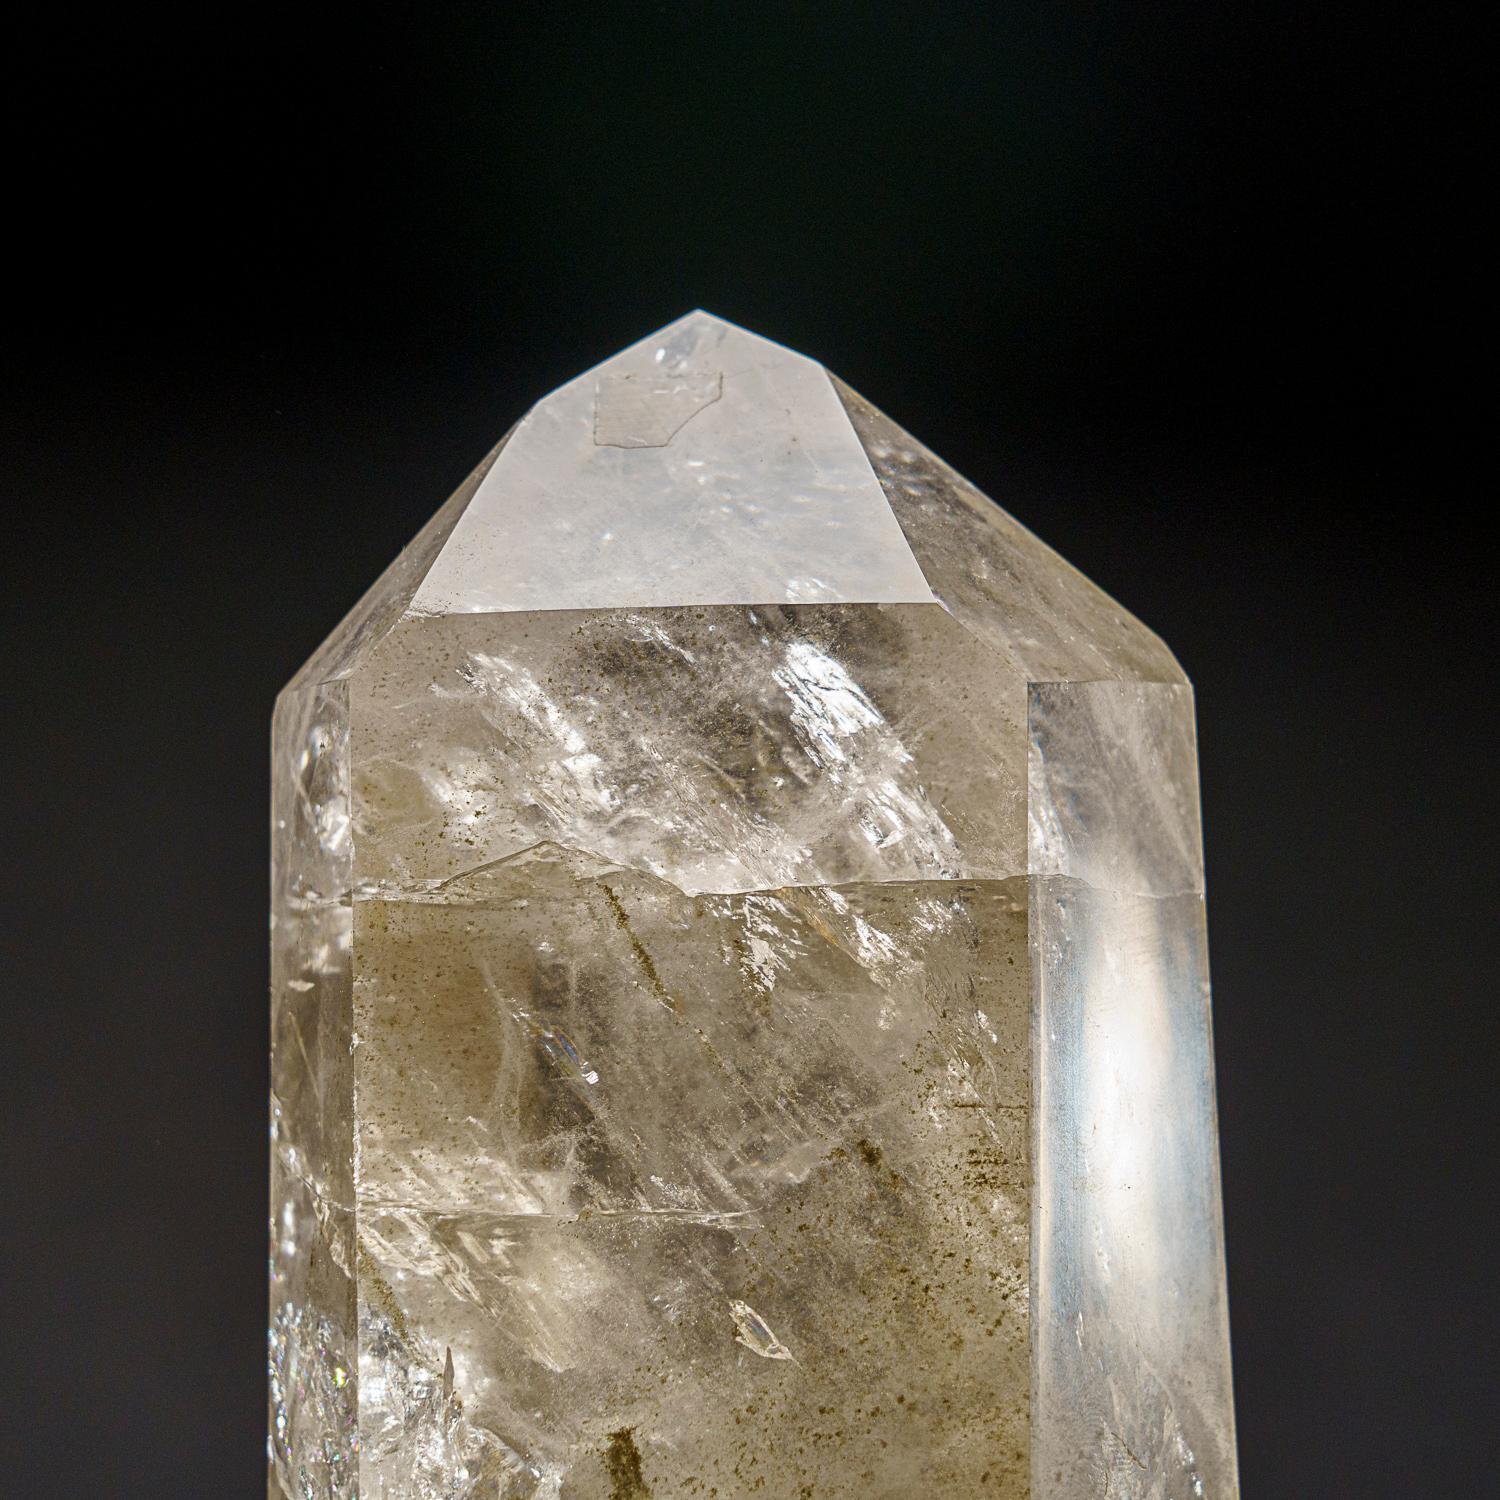 Cette pointe de cristal de quartz clair brésilien est d'une qualité muséale supérieure, avec une finition miroir polie sur toutes les faces. Connue sous le nom de 